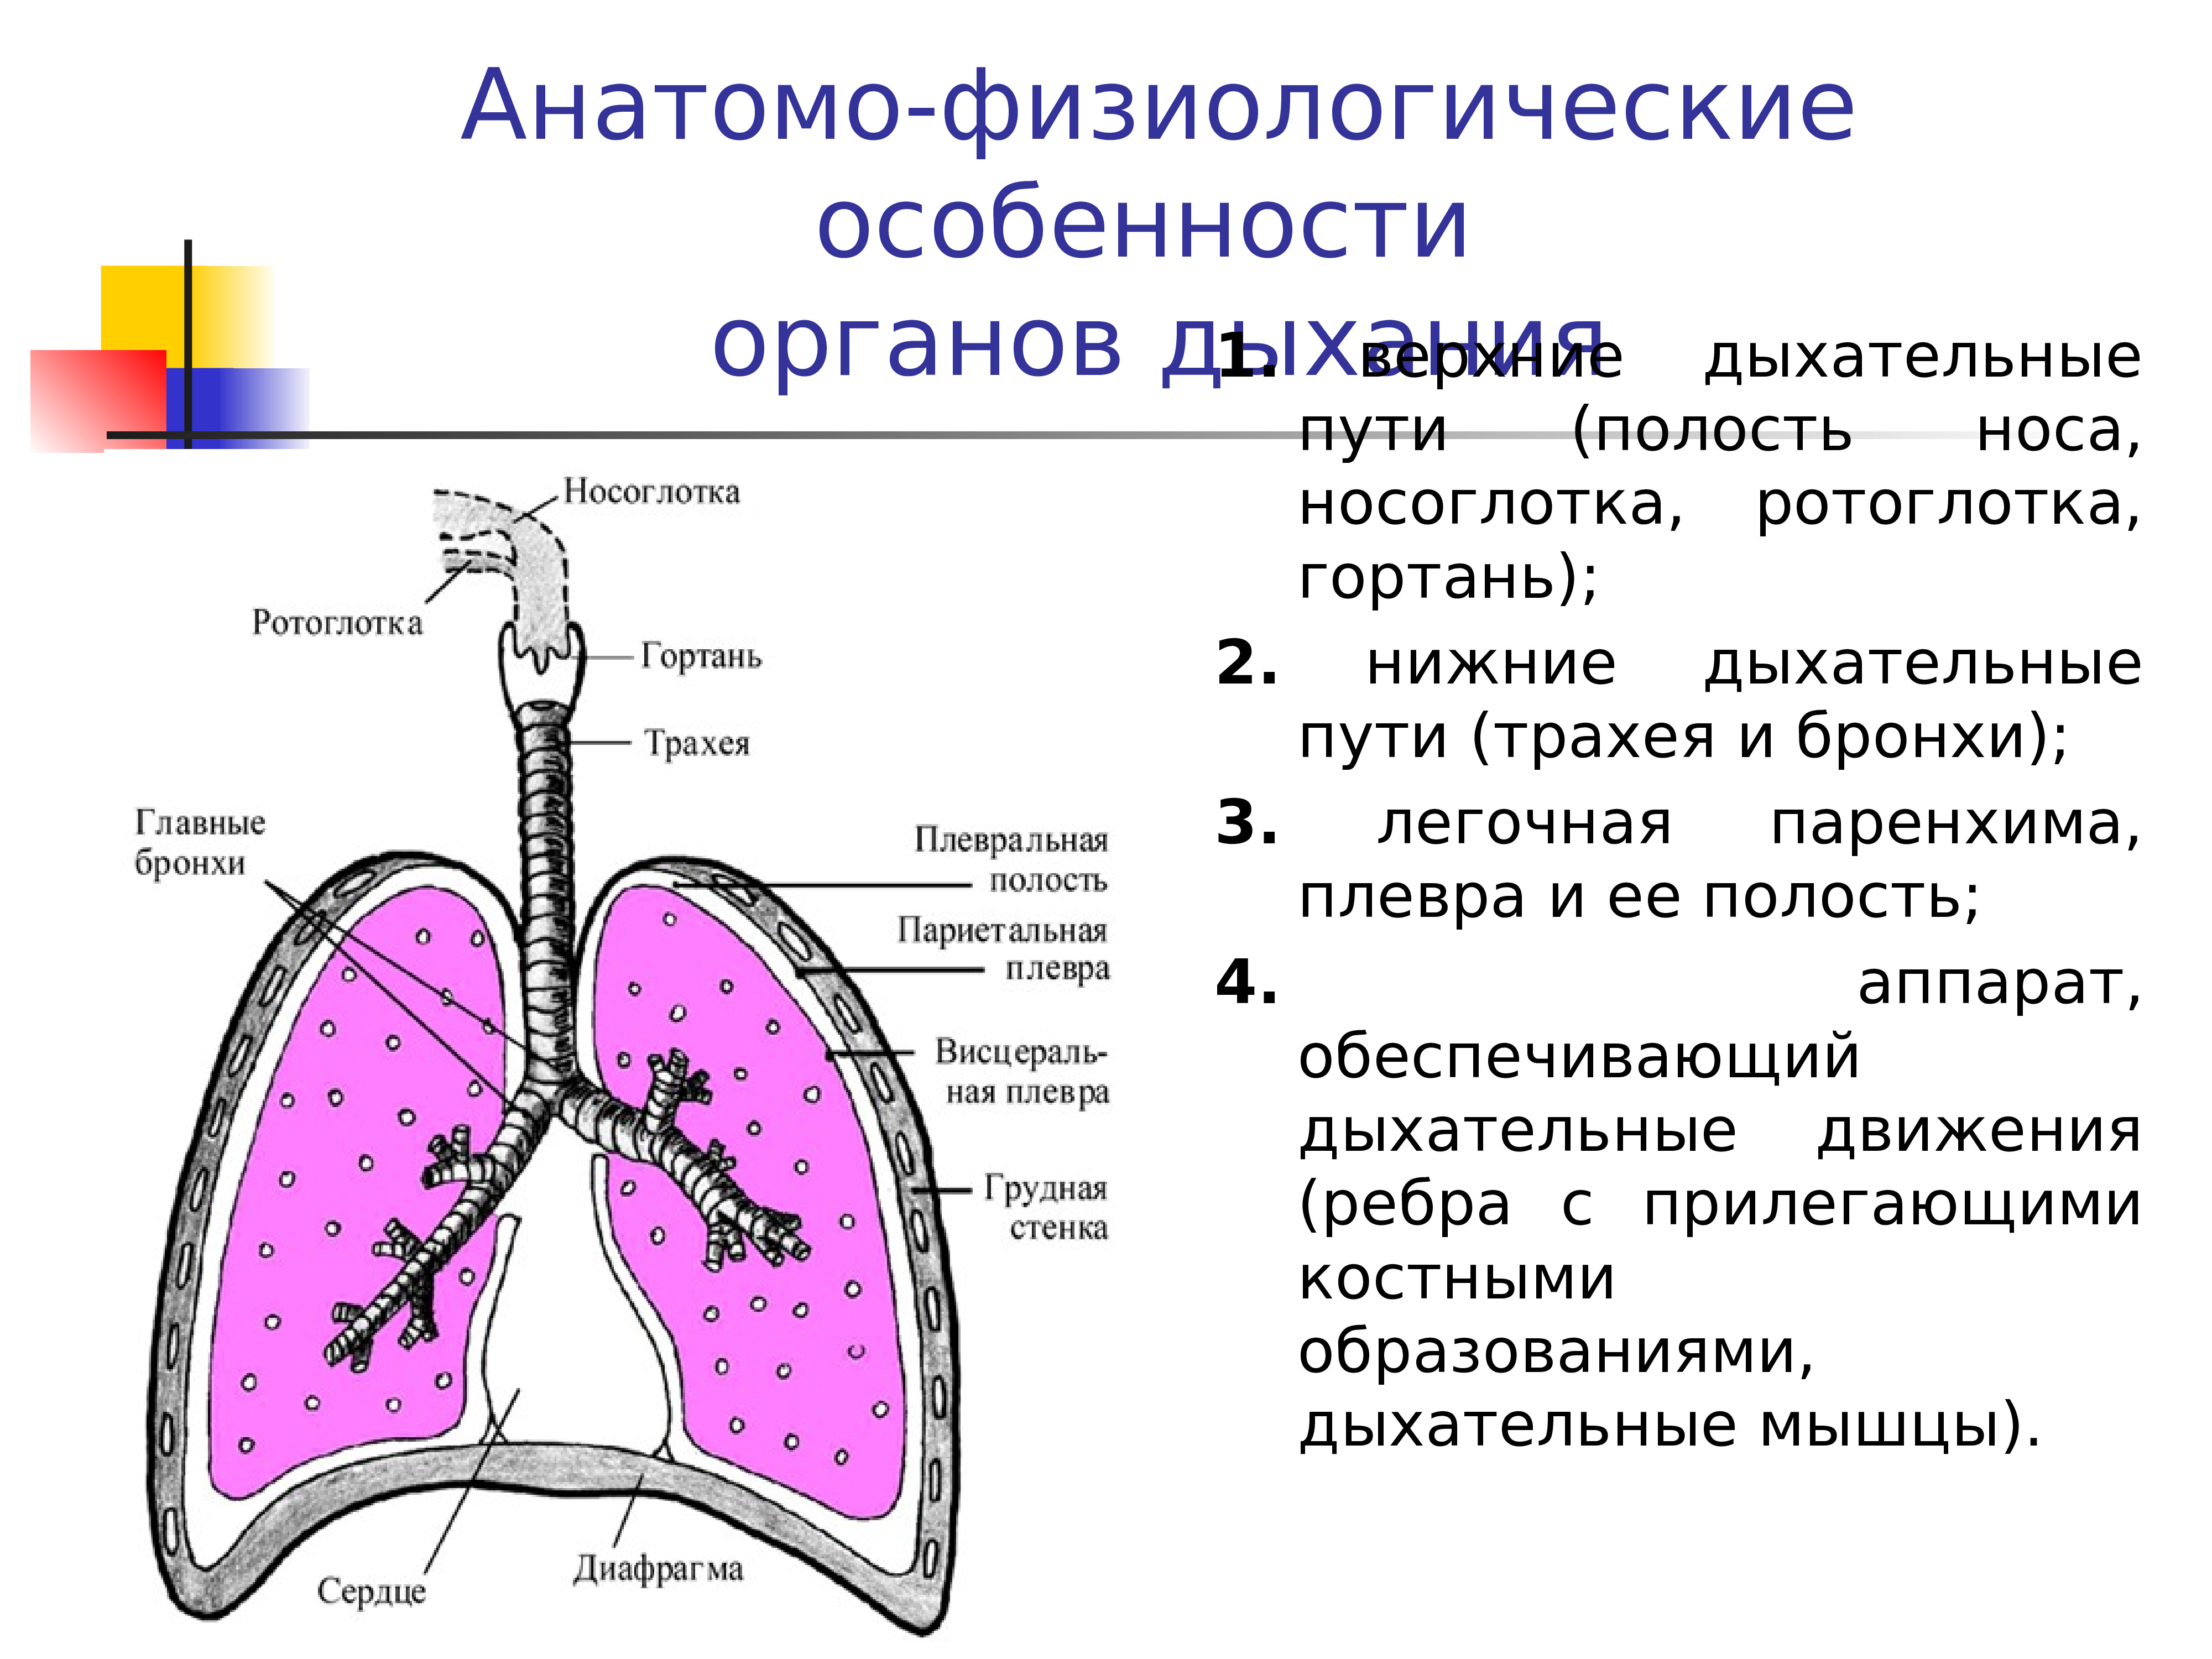 Органы плевральной полости. Анатомо-физиологическая характеристика дыхательной системы. Афо строения органов дыхания. Анатомо - физиологическая характеристика системы органов дыхания.. Характеристика Афо органов дыхания.